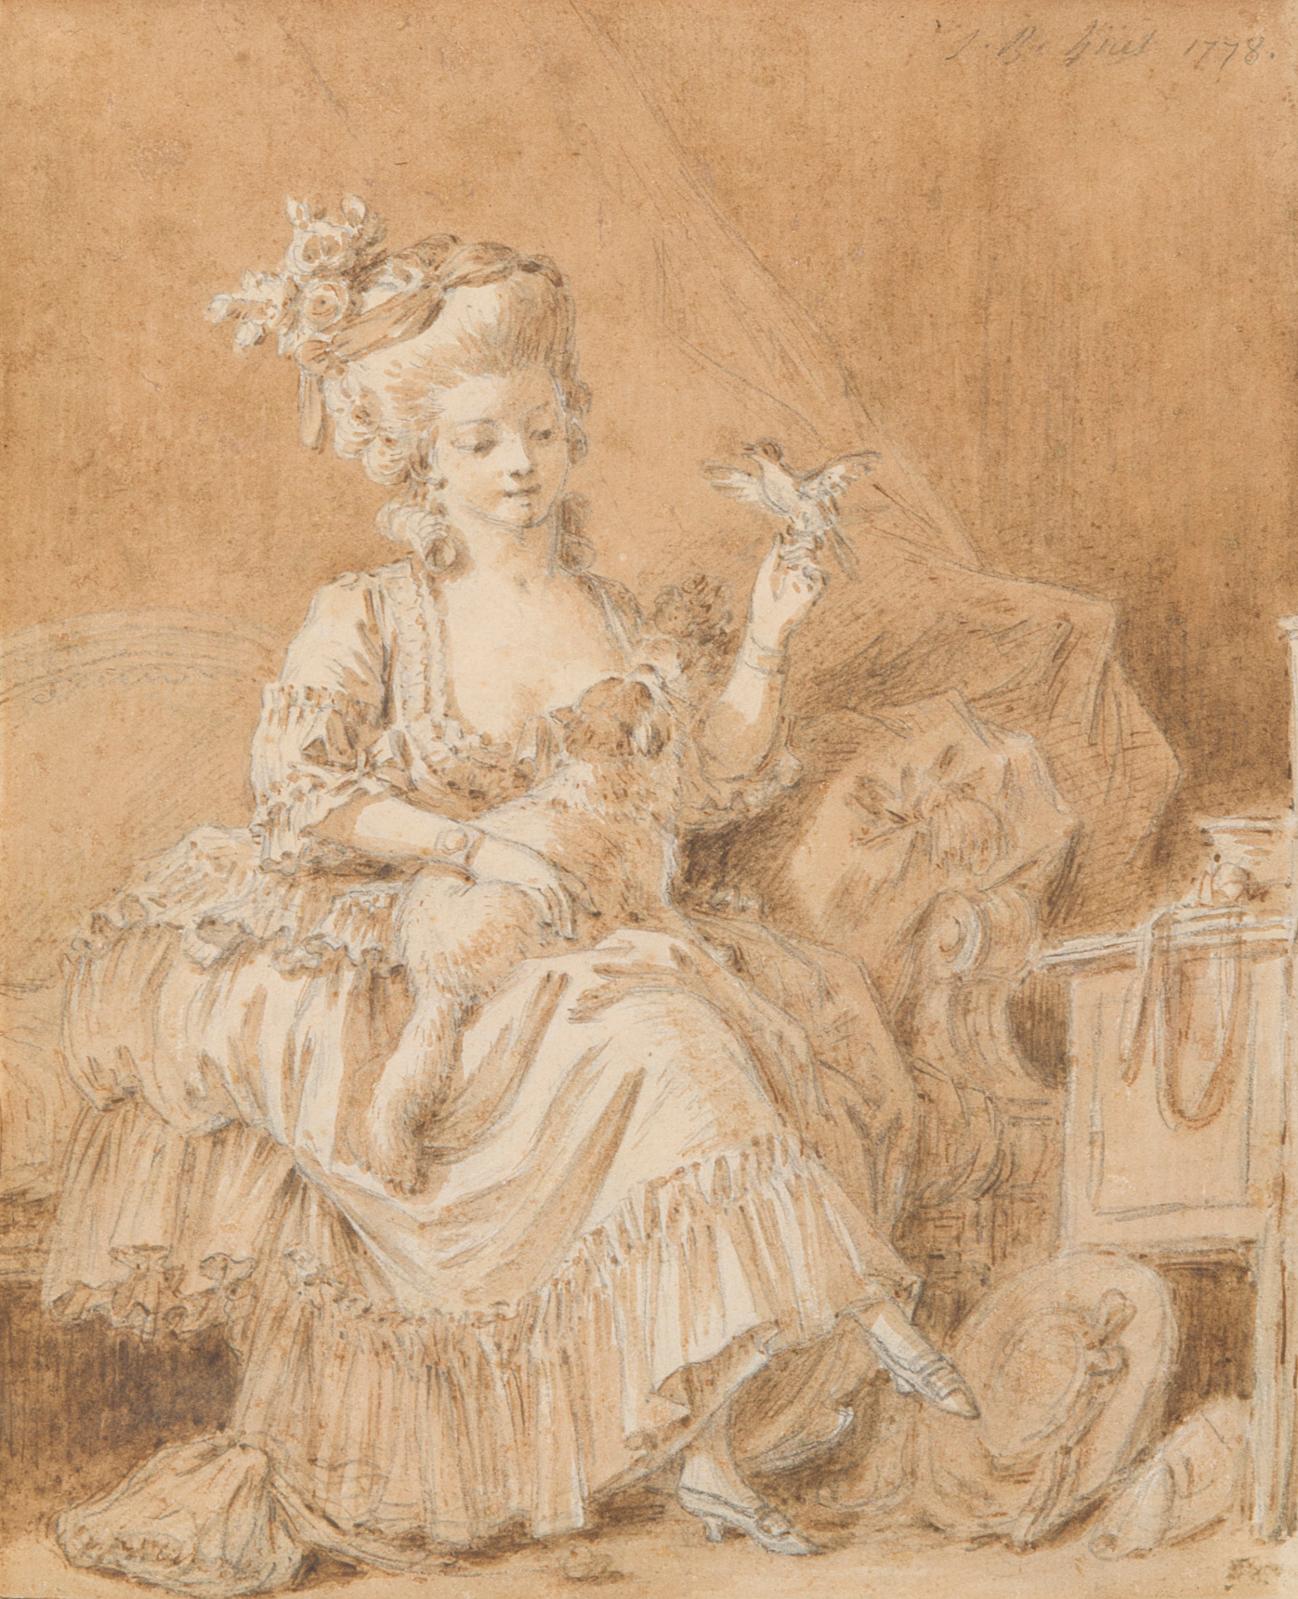 Jean-Baptiste Huet (1745-1811) incarne l’esprit léger et quelque peu grivois des pastorales dans la seconde moitié du XVIIIe siècle, style lancé par F